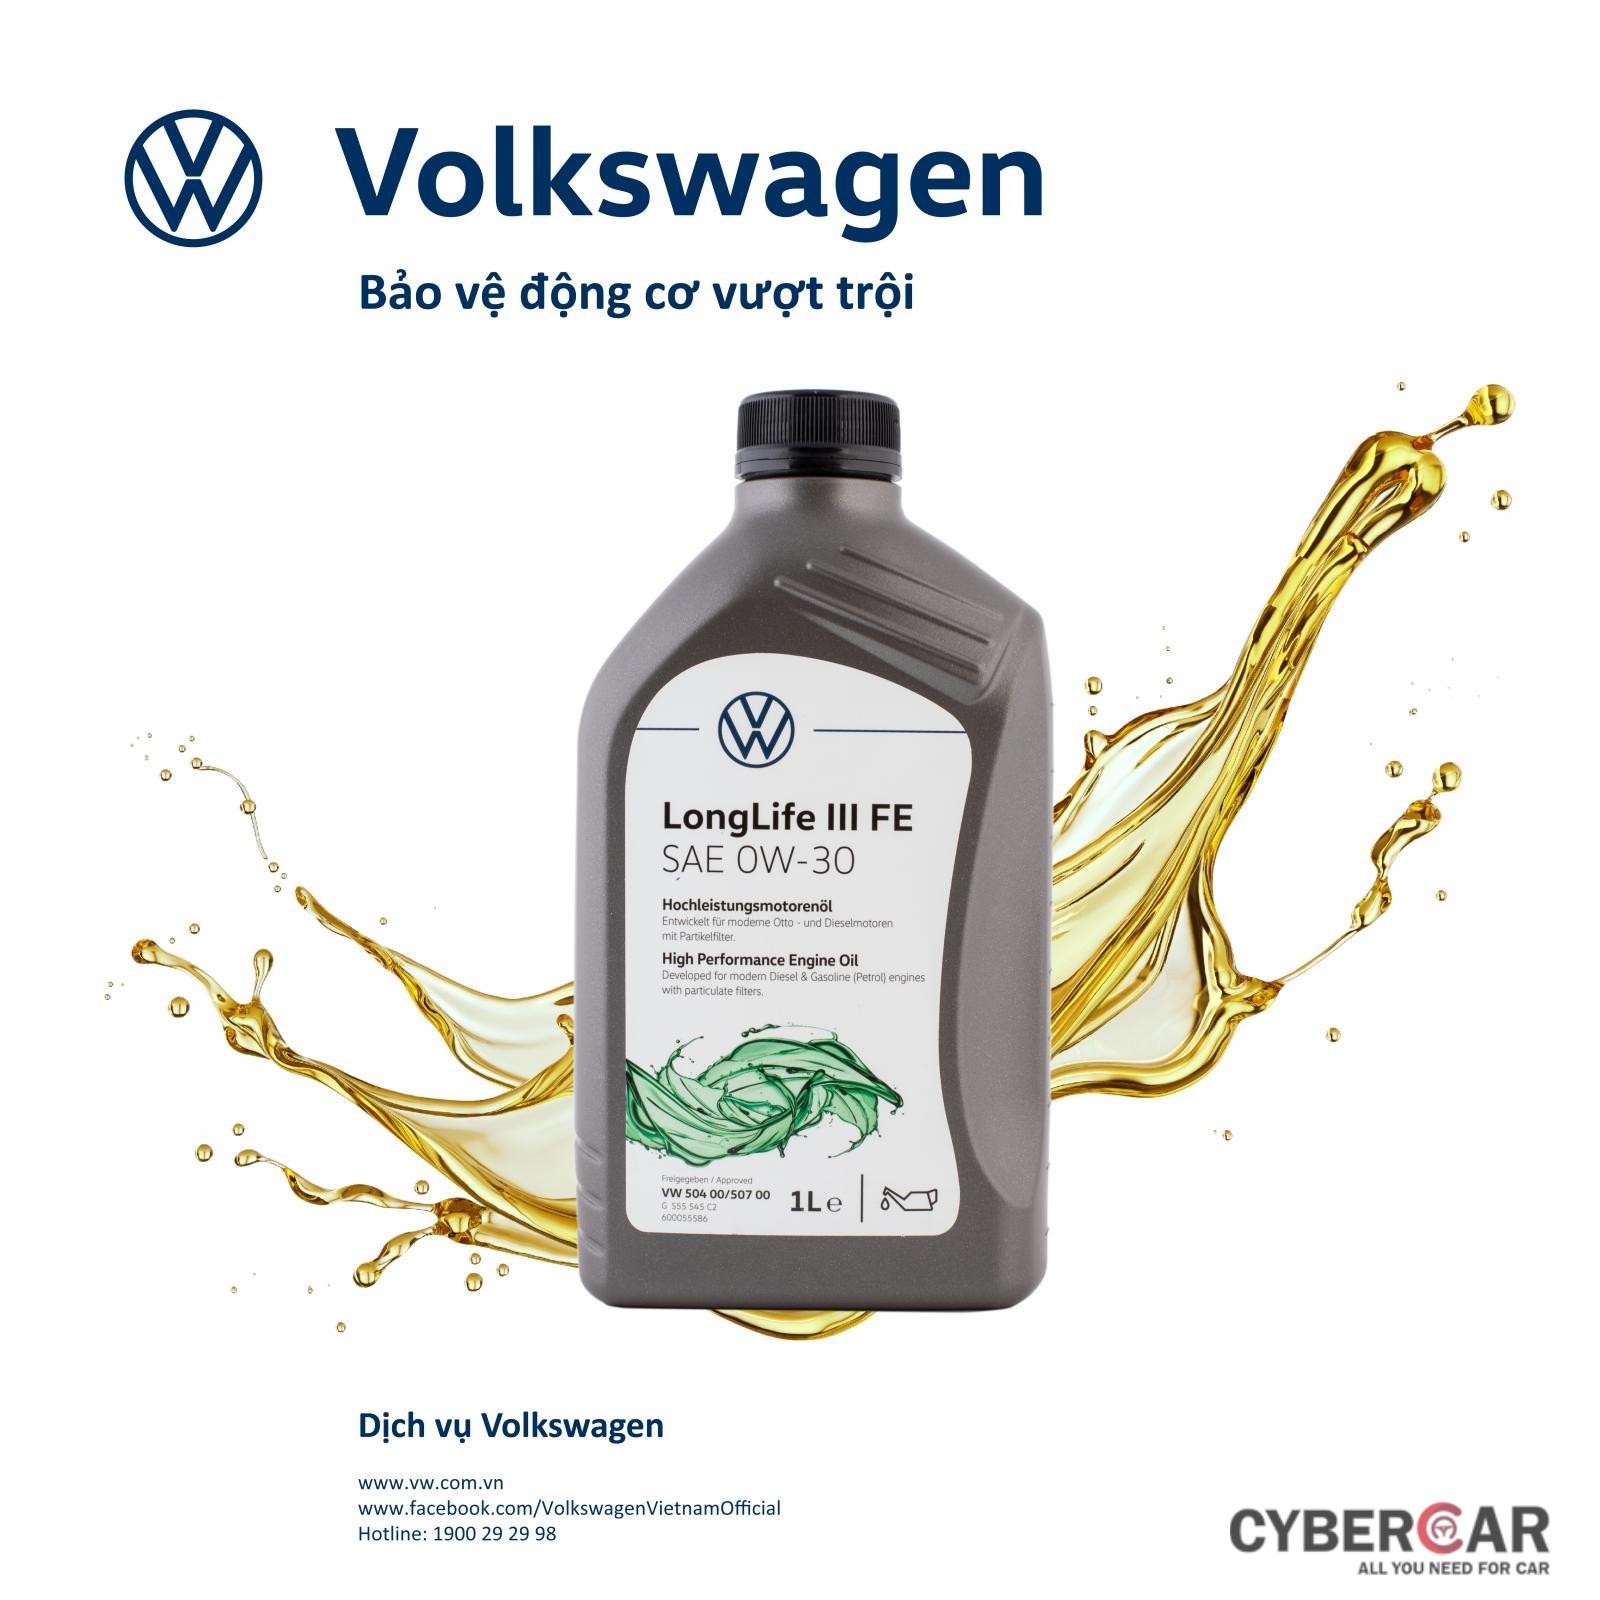 Volkswagen tung ưu đãi hấp dẫn cho Tiguan Elegance, Passat và Polo - Ảnh 2.